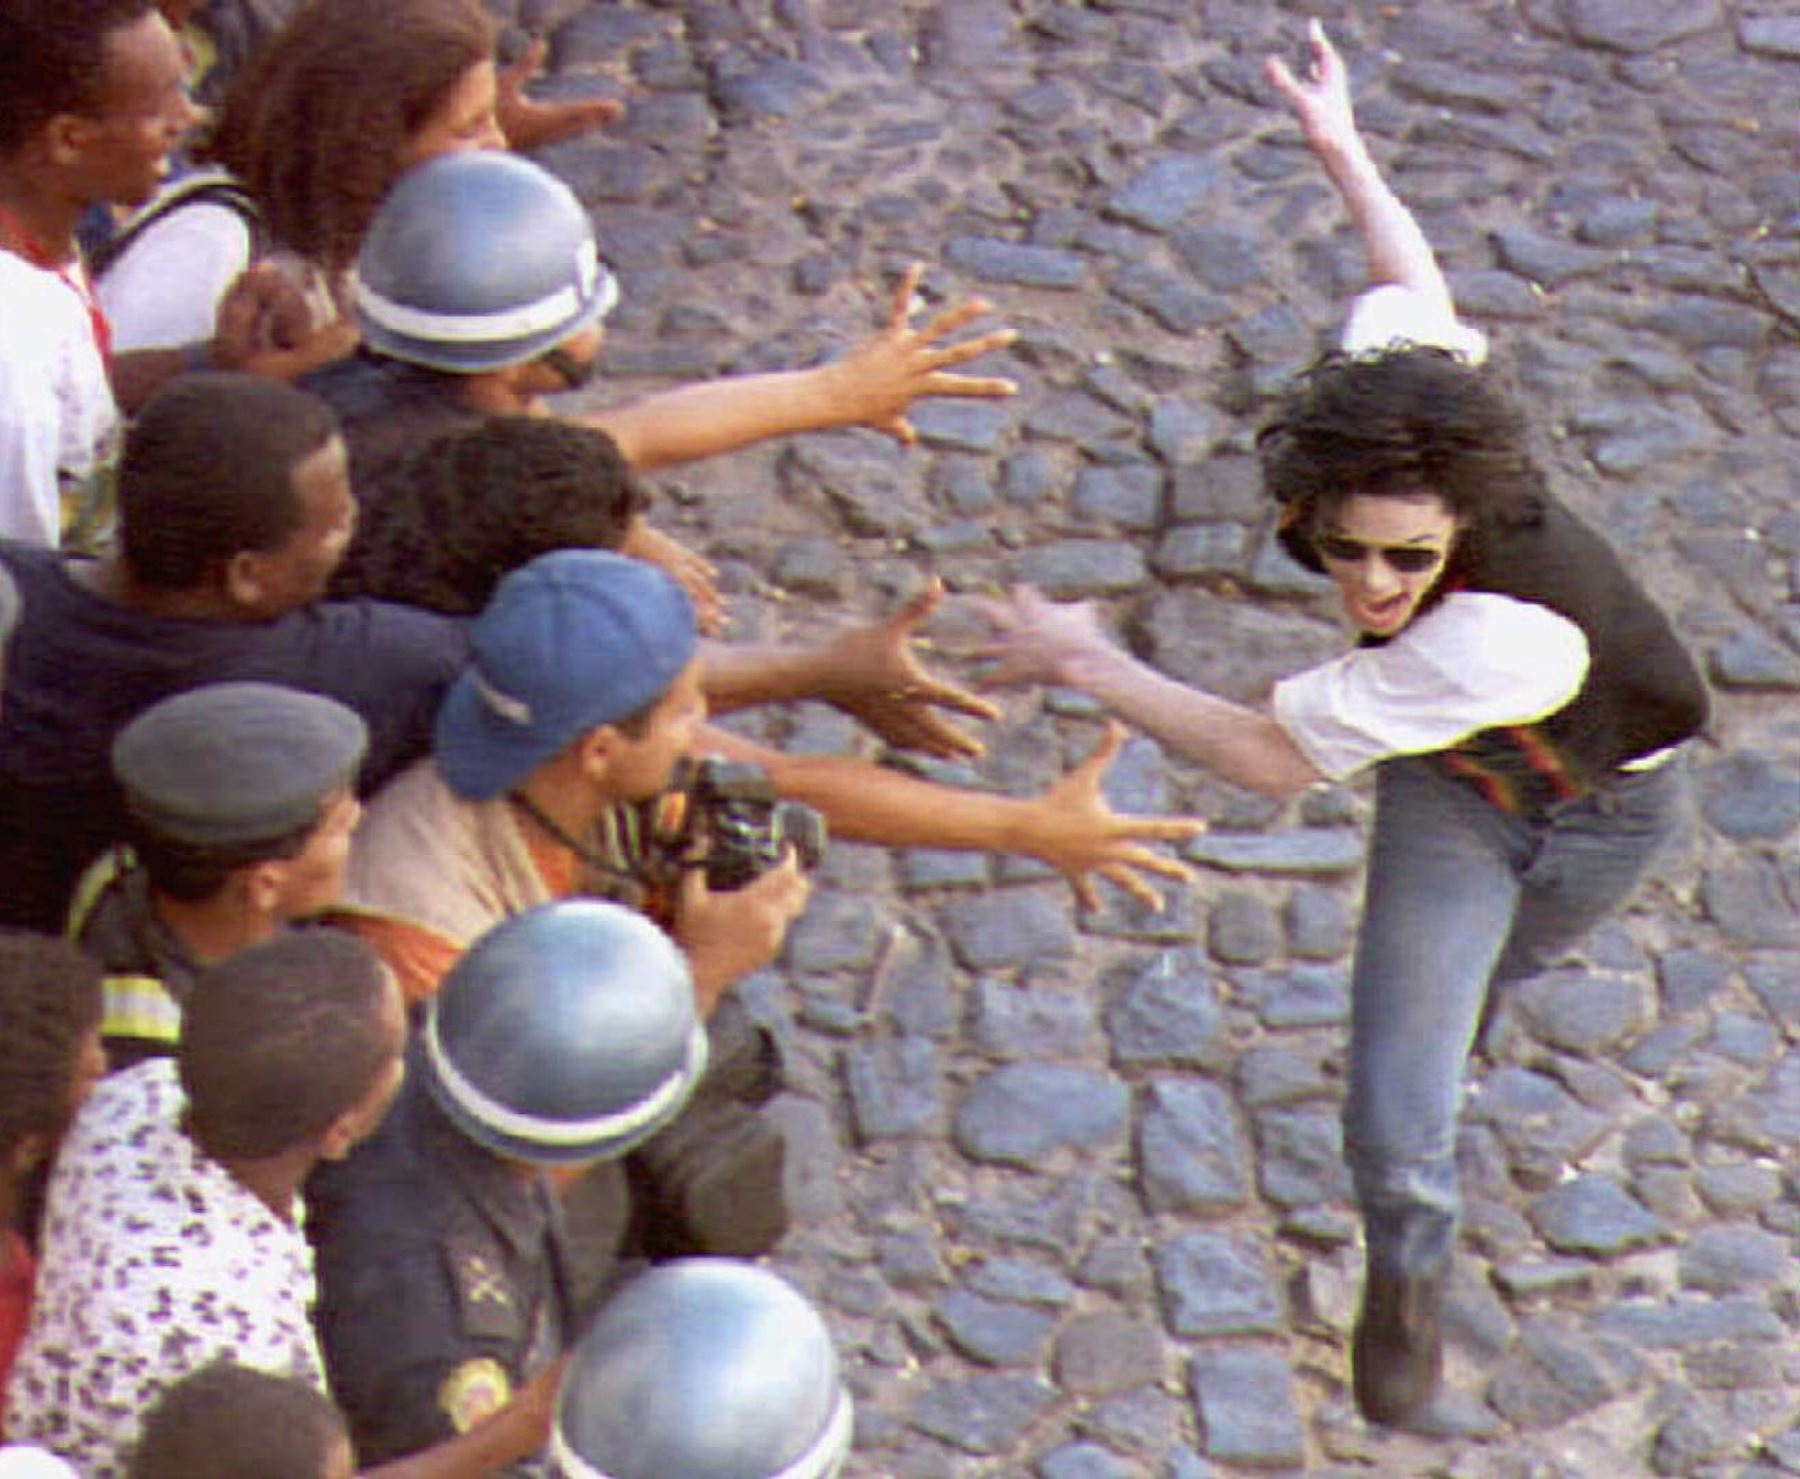 Foto de archivo del 10 de febrero de 1996 muestra a los fanáticos brasileños acercándose para tocar a la estrella pop estadounidense Michael Jackson. Foto: AFP